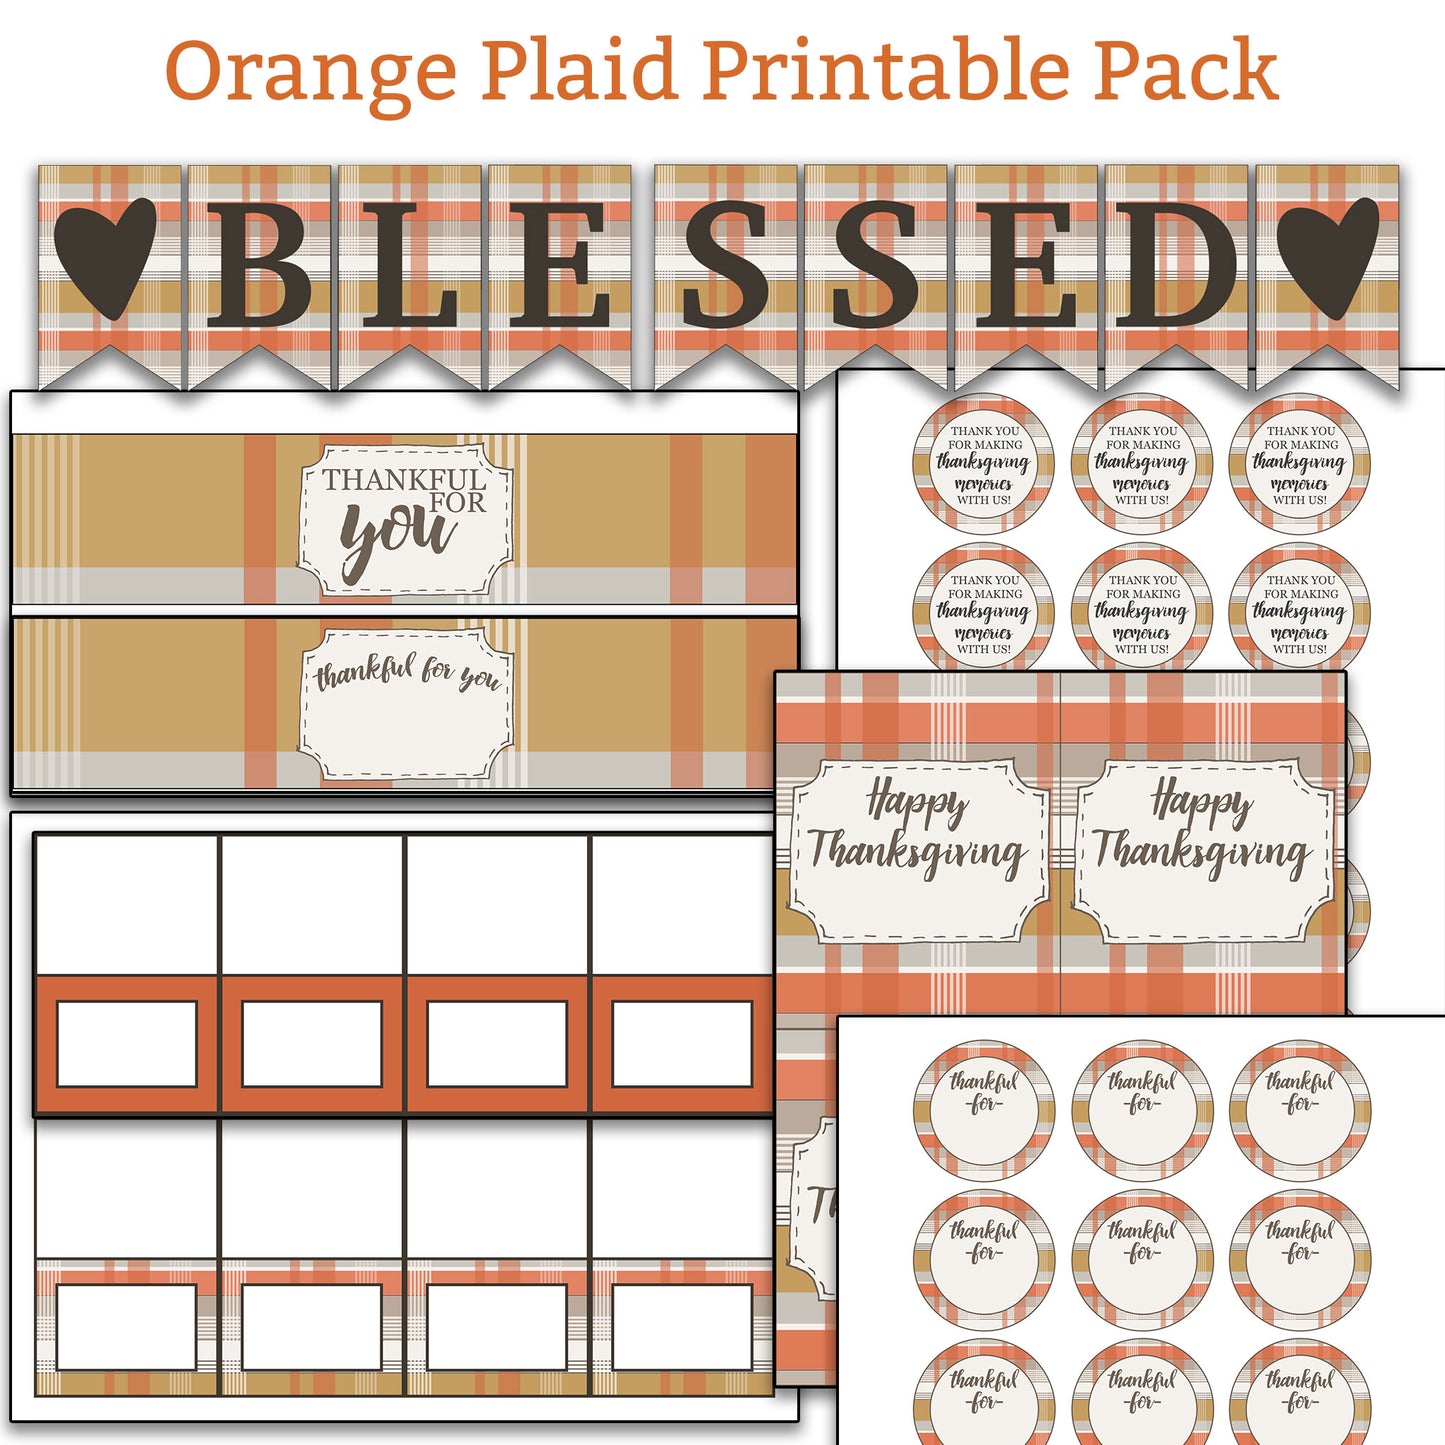 3 Pack Bundle - Thanksgiving Printables Kit